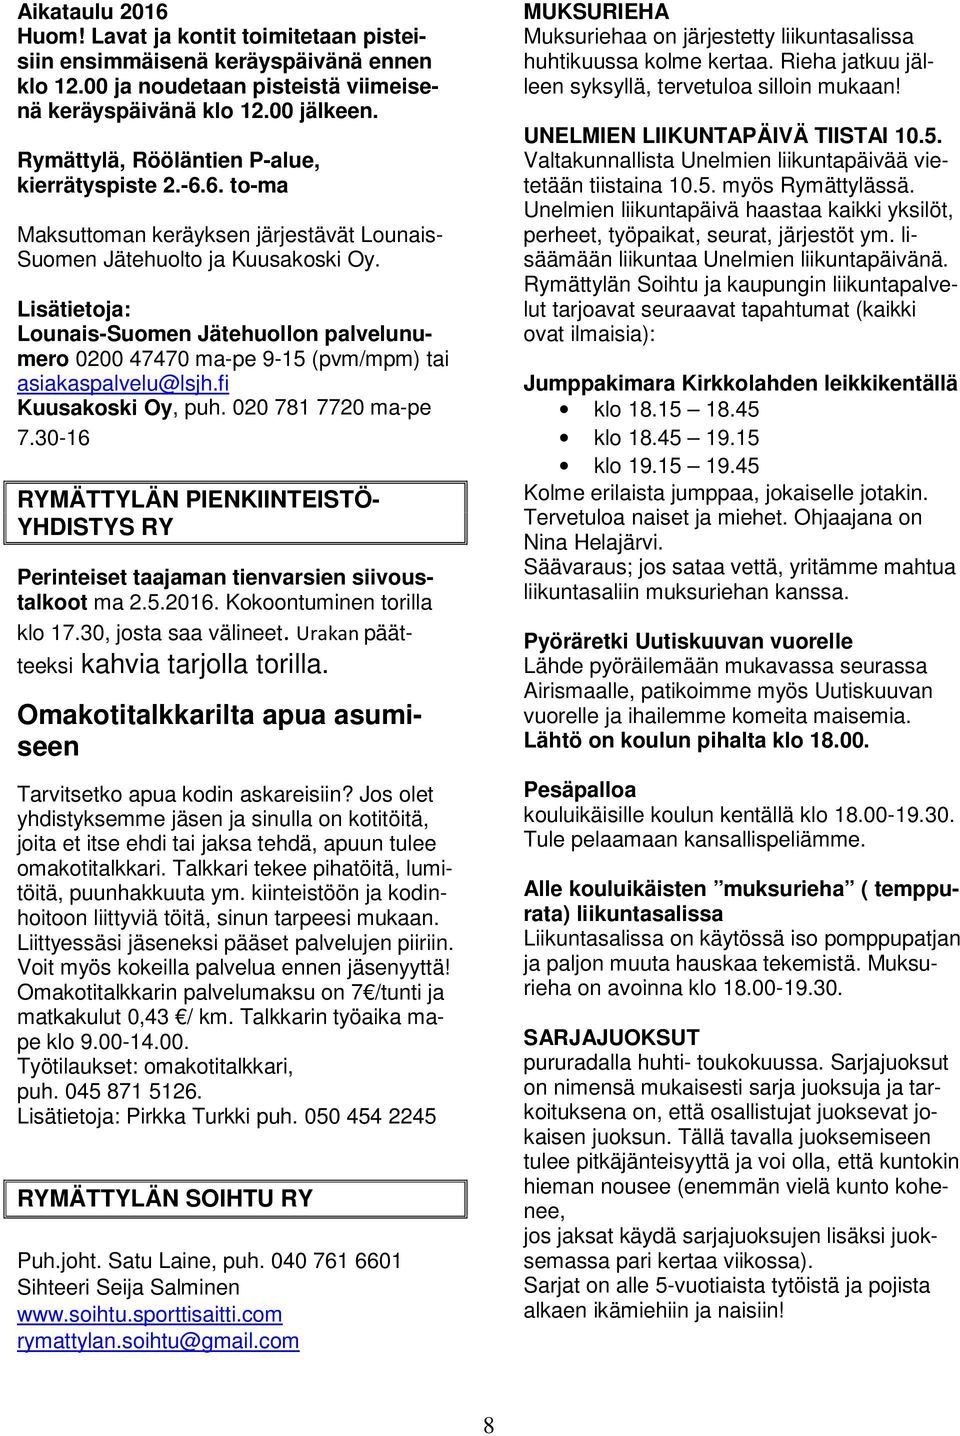 Lisätietoja: Lounais-Suomen Jätehuollon palvelunumero 0200 47470 ma-pe 9-15 (pvm/mpm) tai asiakaspalvelu@lsjh.fi Kuusakoski Oy, puh. 020 781 7720 ma-pe 7.